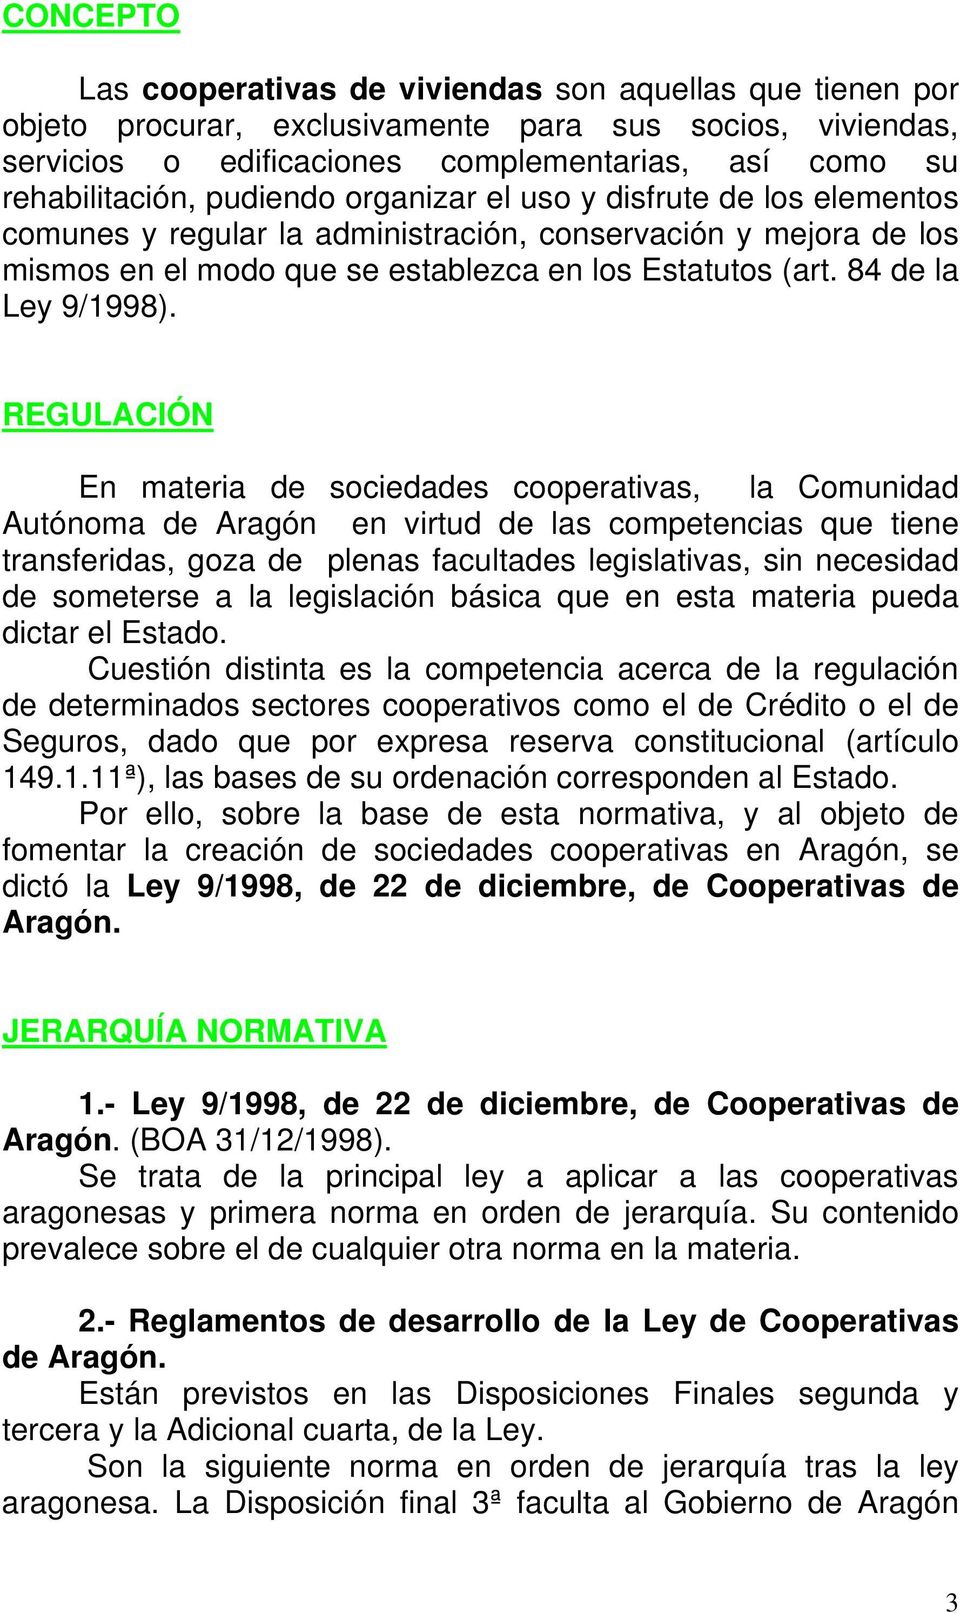 REGULACIÓN En materia de sociedades cooperativas, la Comunidad Autónoma de Aragón en virtud de las competencias que tiene transferidas, goza de plenas facultades legislativas, sin necesidad de